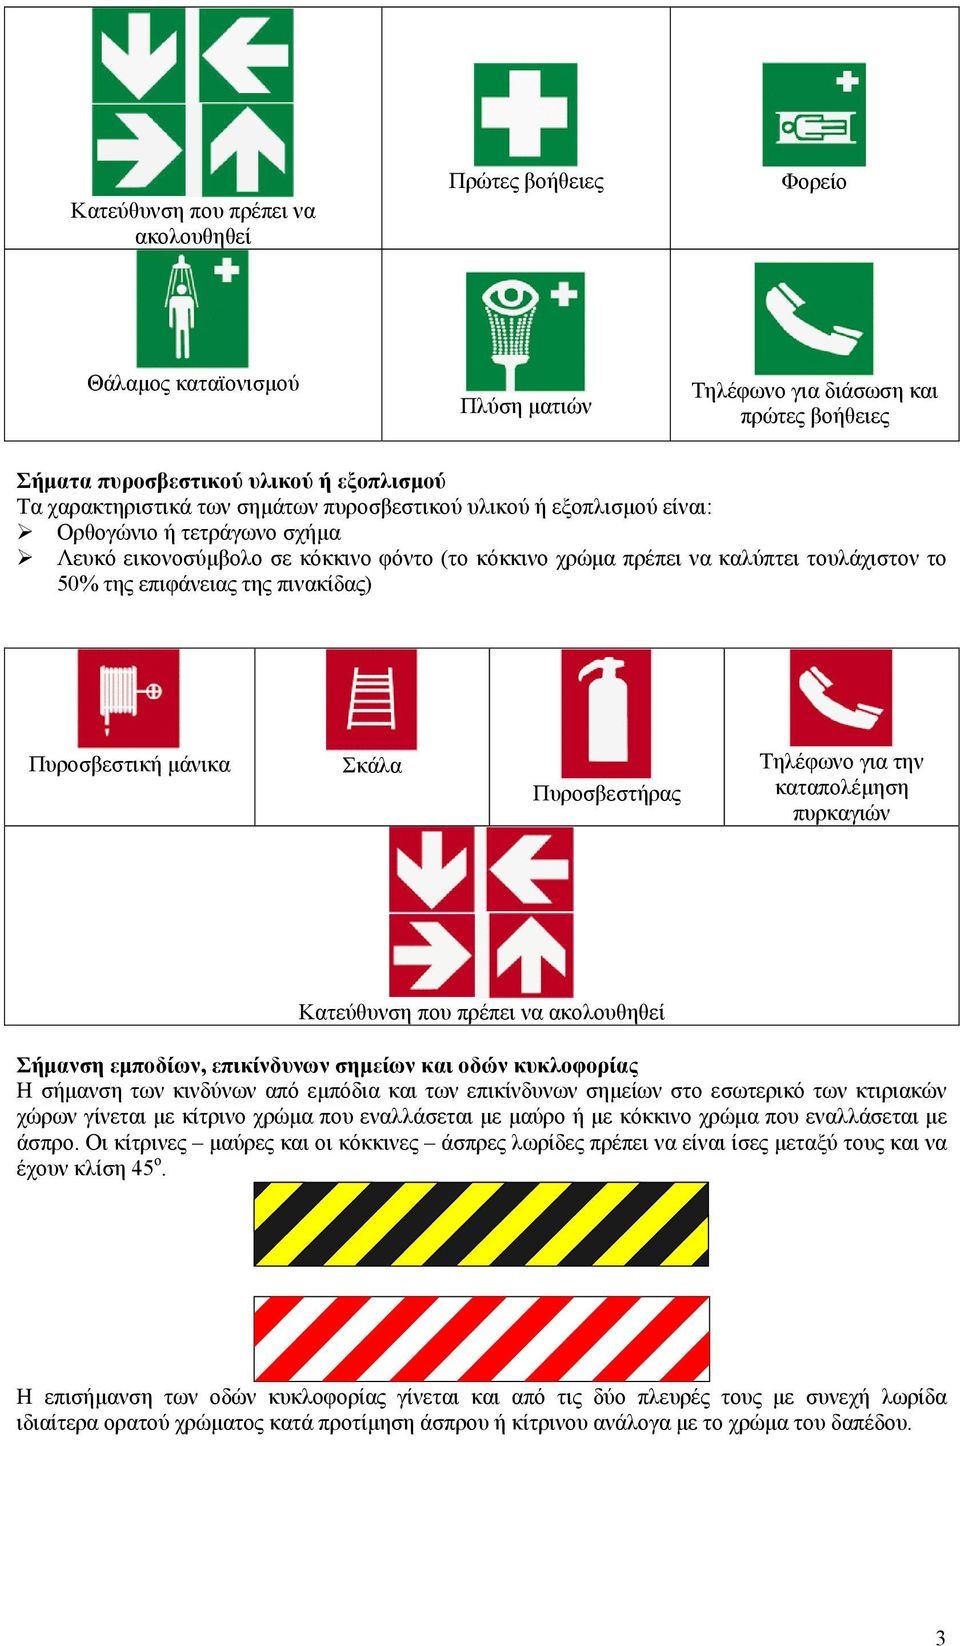 Πυροσβεστική µάνικα Σκάλα Πυροσβεστήρας Τηλέφωνο για την καταπολέµηση πυρκαγιών Κατεύθυνση που πρέπει να ακολουθηθεί Σήµανση εµποδίων, επικίνδυνων σηµείων και οδών κυκλοφορίας Η σήµανση των κινδύνων